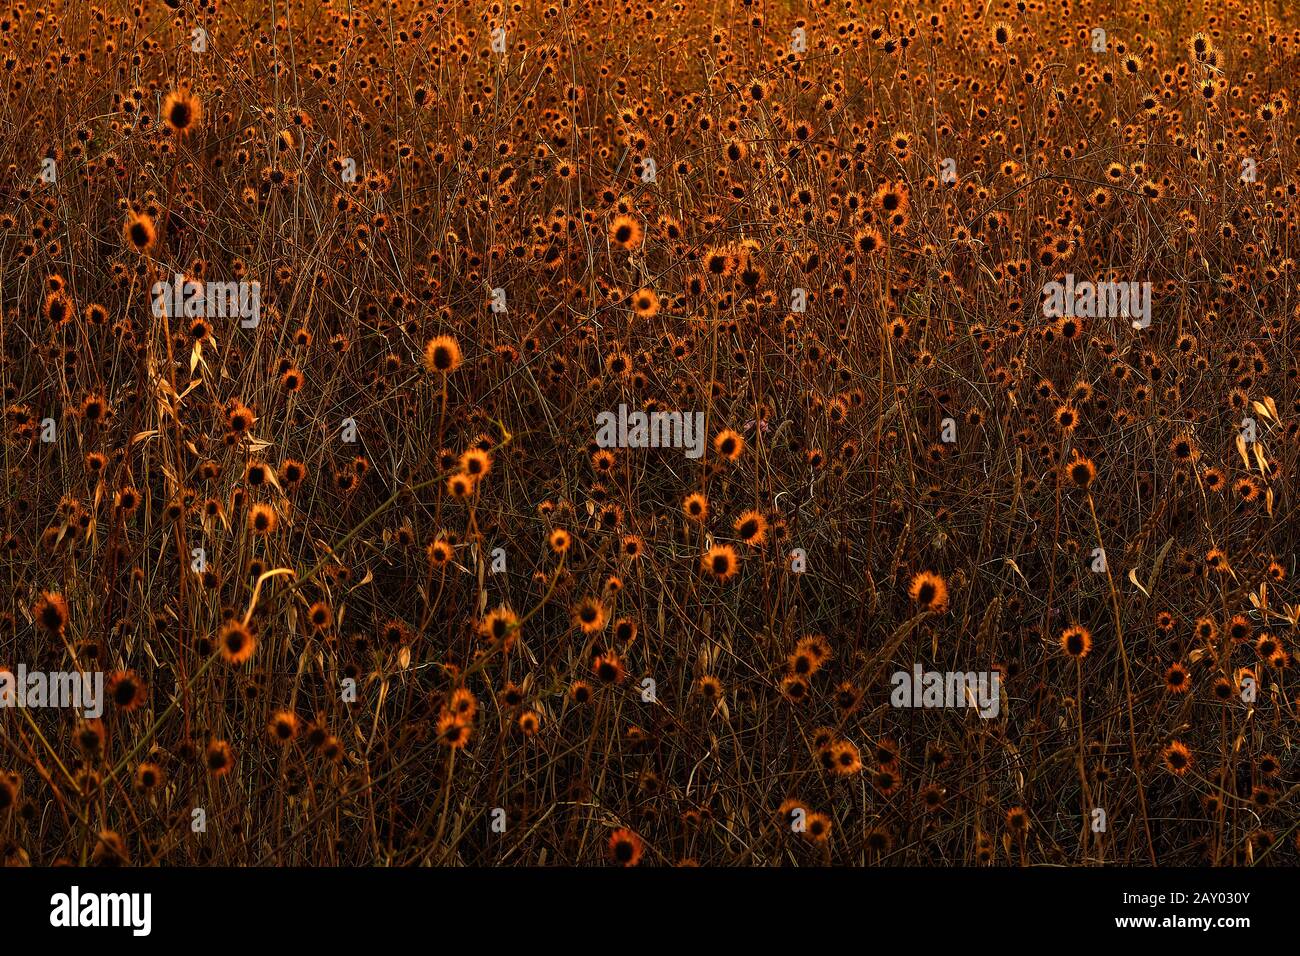 Sfondo di campo di fiori rotondi illuminati dall'alba di una luce dorata, Collserola, Catalogna Foto Stock